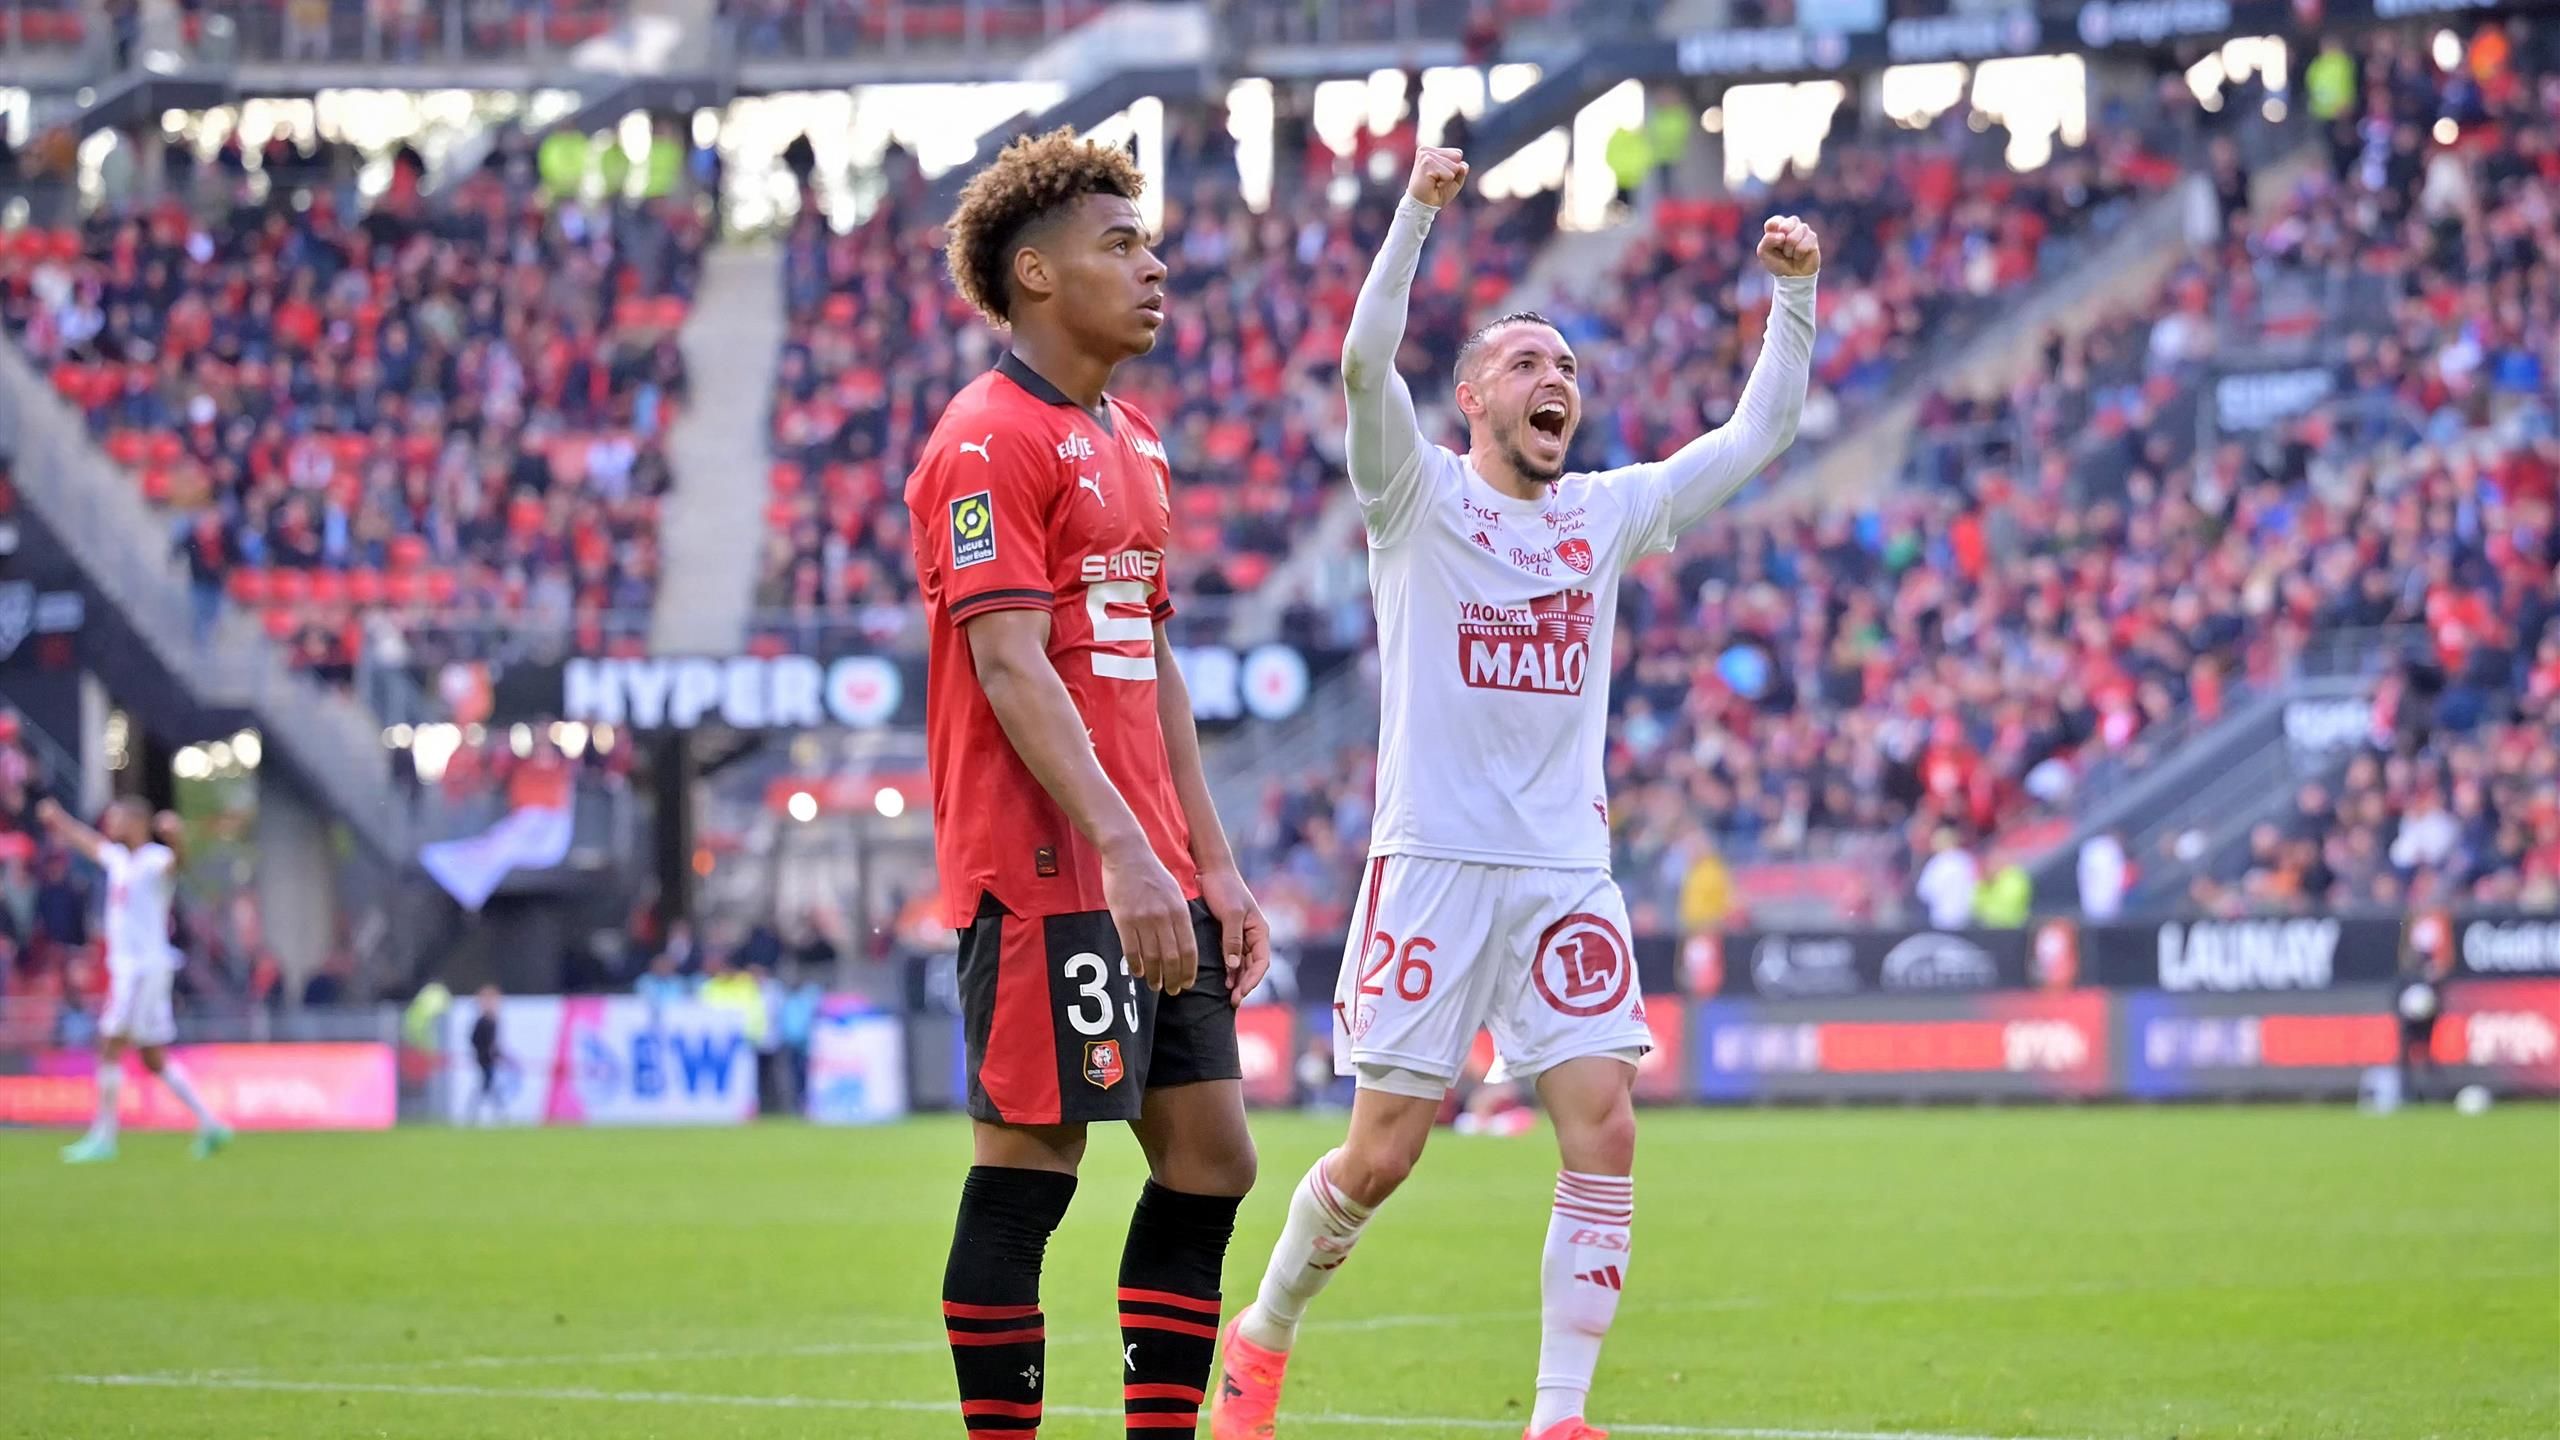 Campionato francese 1 – “Mocassini” e “Il sogno”: Stade Rennes – Brest, un derby pazzesco e un'atmosfera